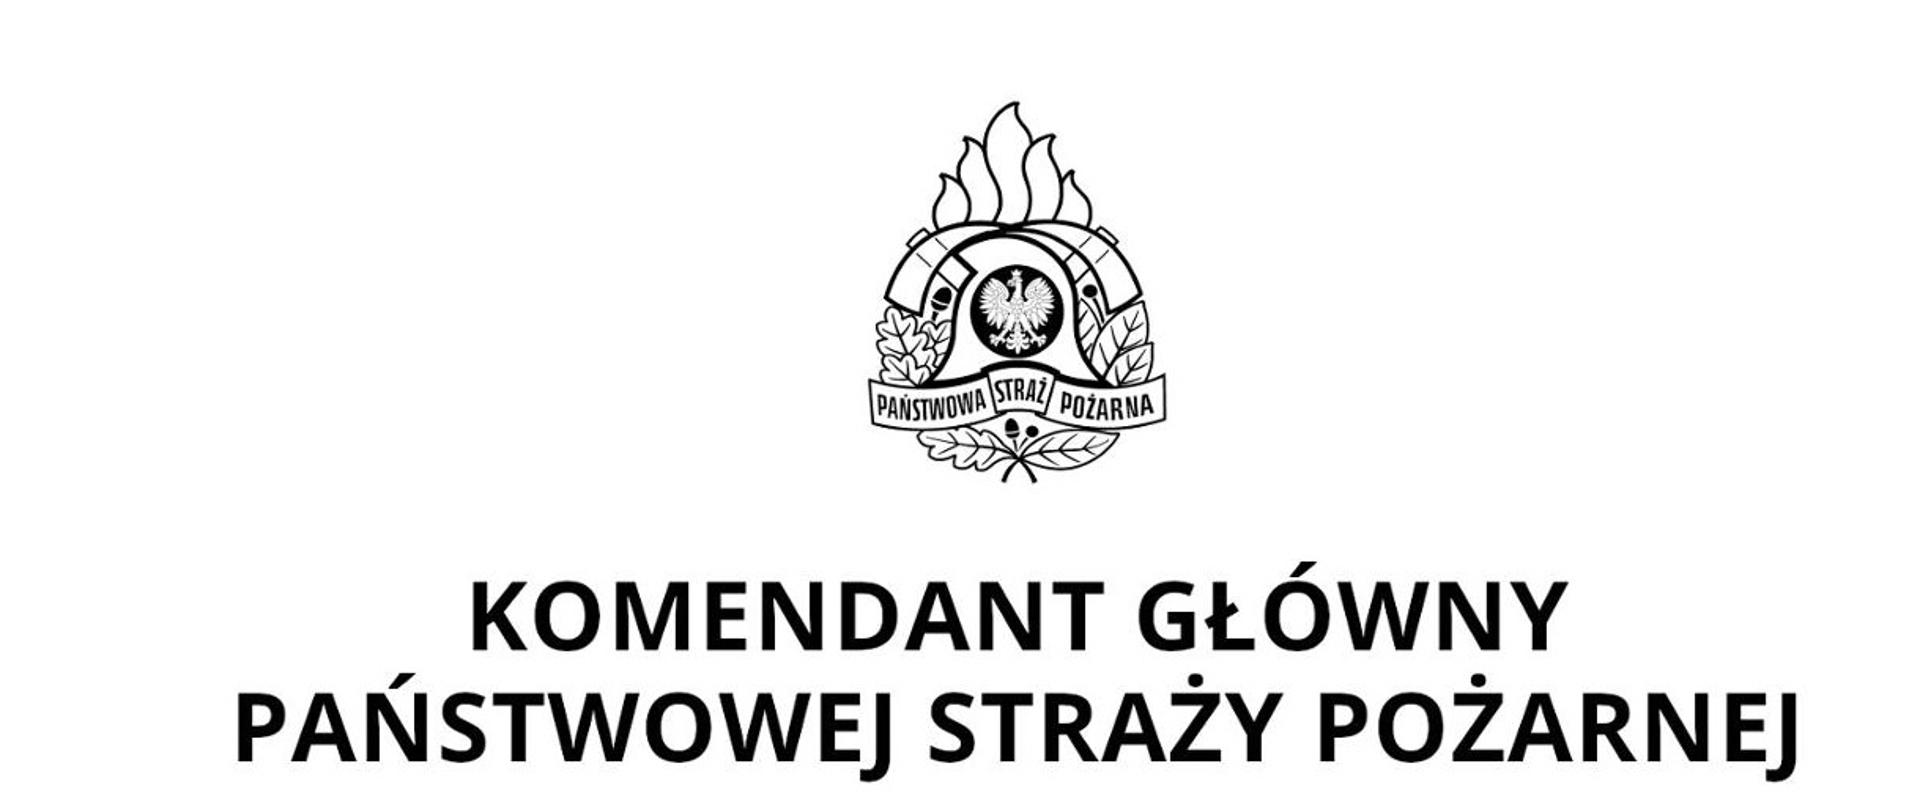 Zdjęcie przestawia logo Państwowej Straży Pożarnej oraz napis Komendant Główny Państwowej Straży Pożarnej